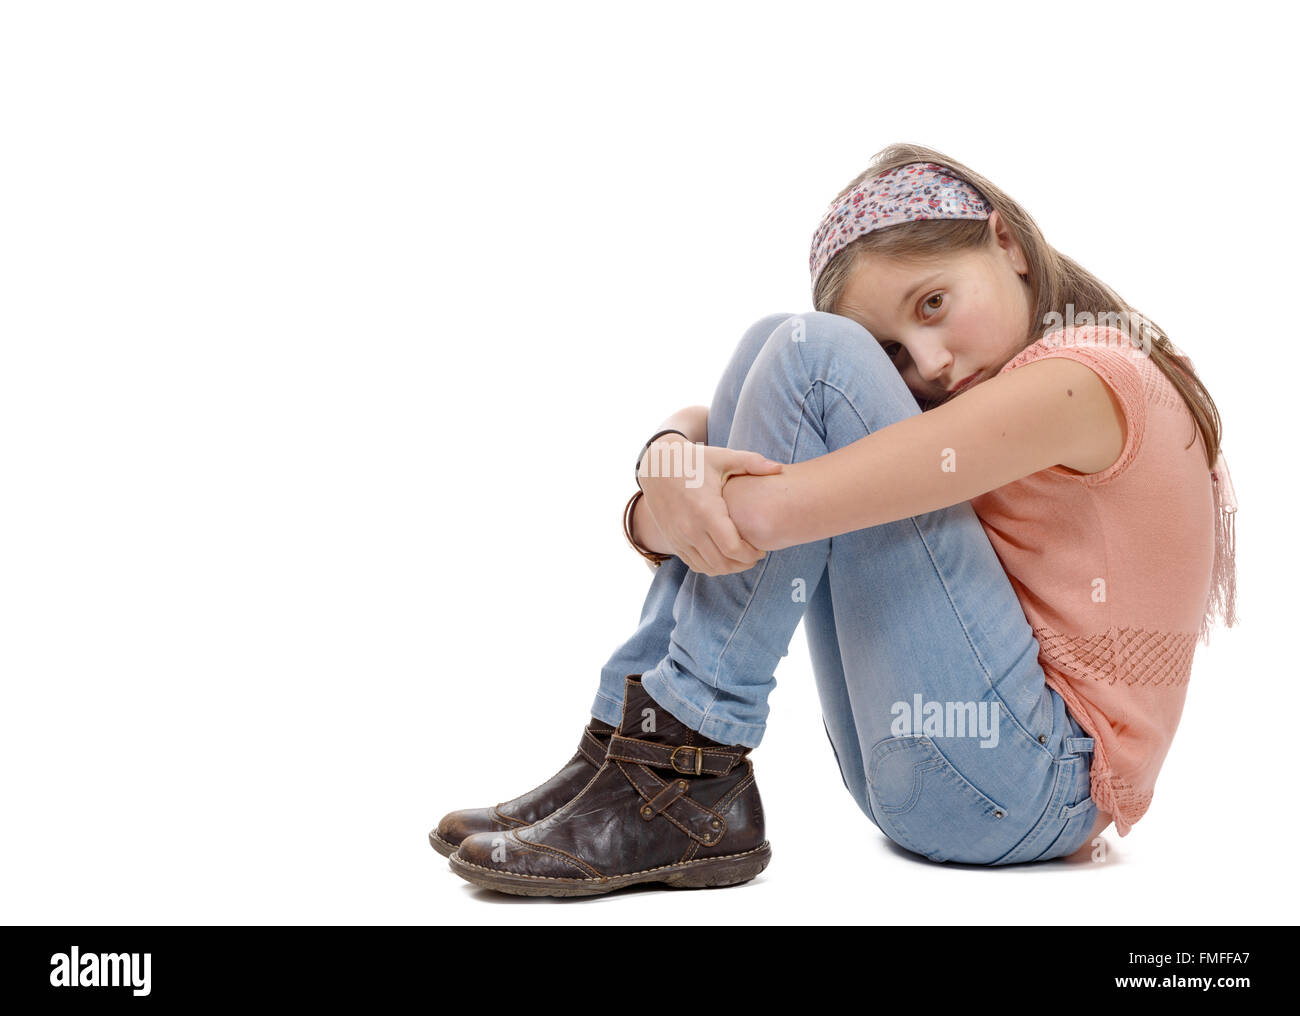 Una niña preadolescentes triste está sentada en el suelo Foto de stock